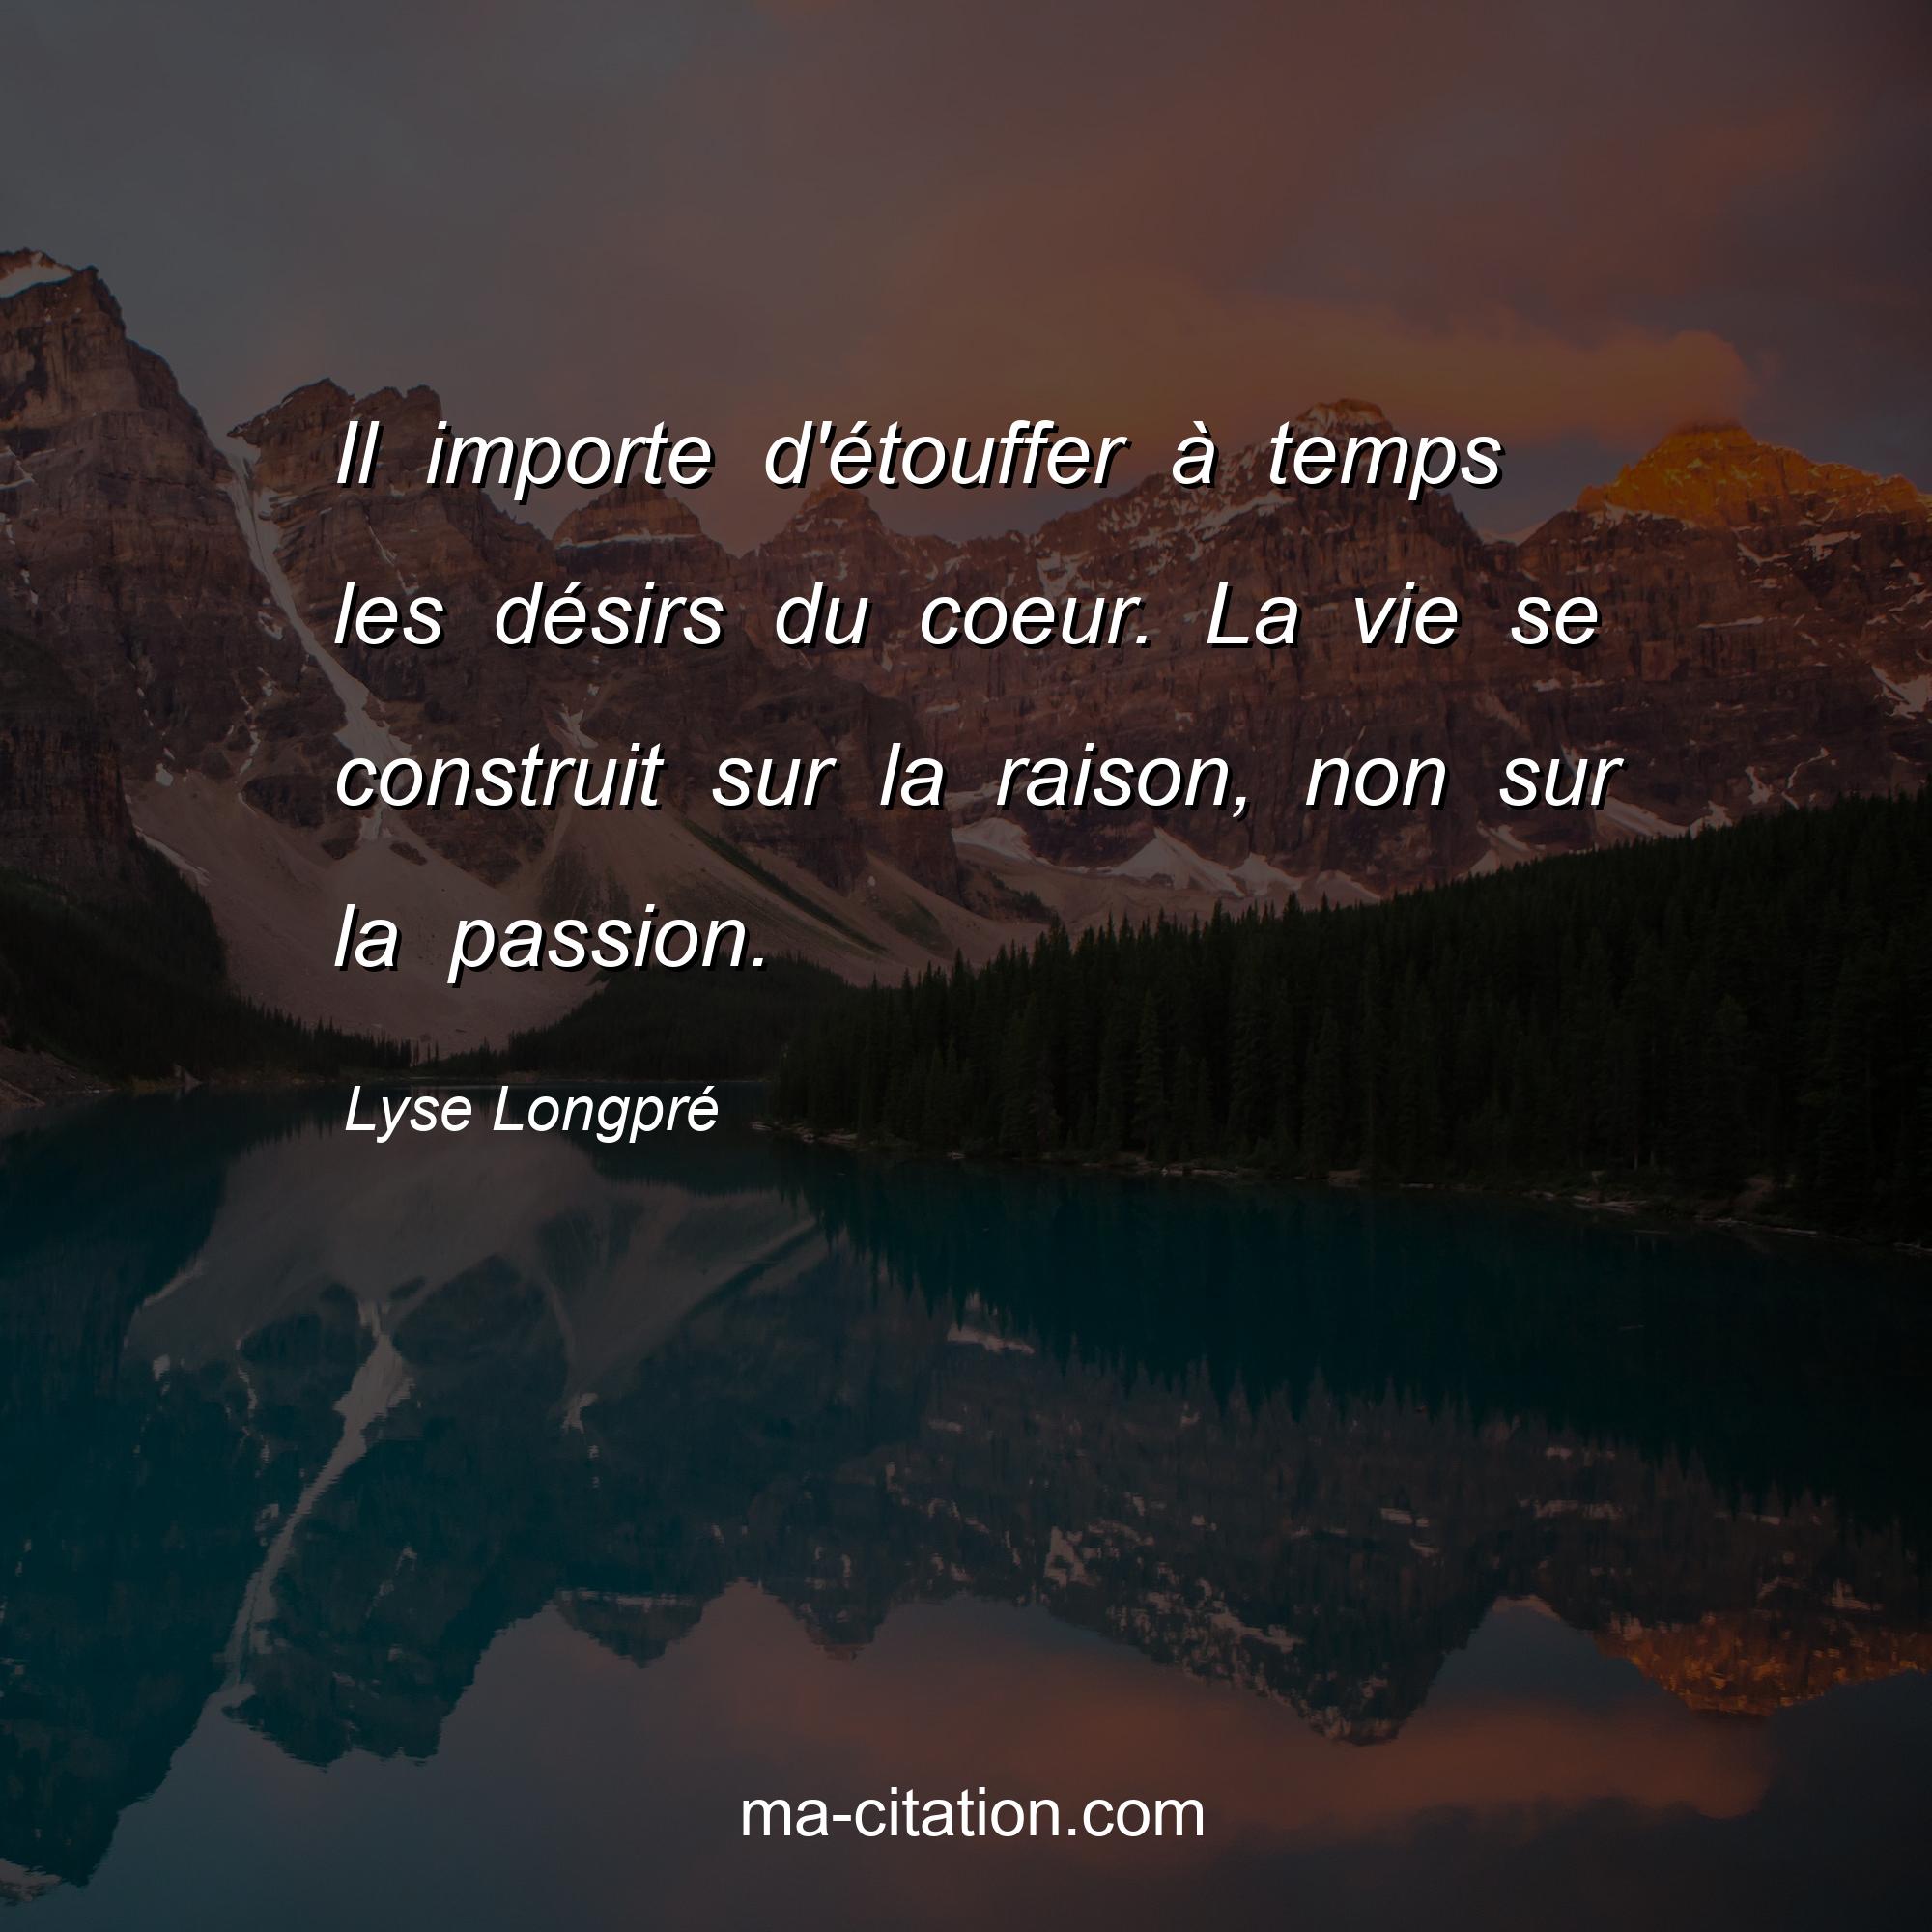 Lyse Longpré : Il importe d'étouffer à temps les désirs du coeur. La vie se construit sur la raison, non sur la passion.